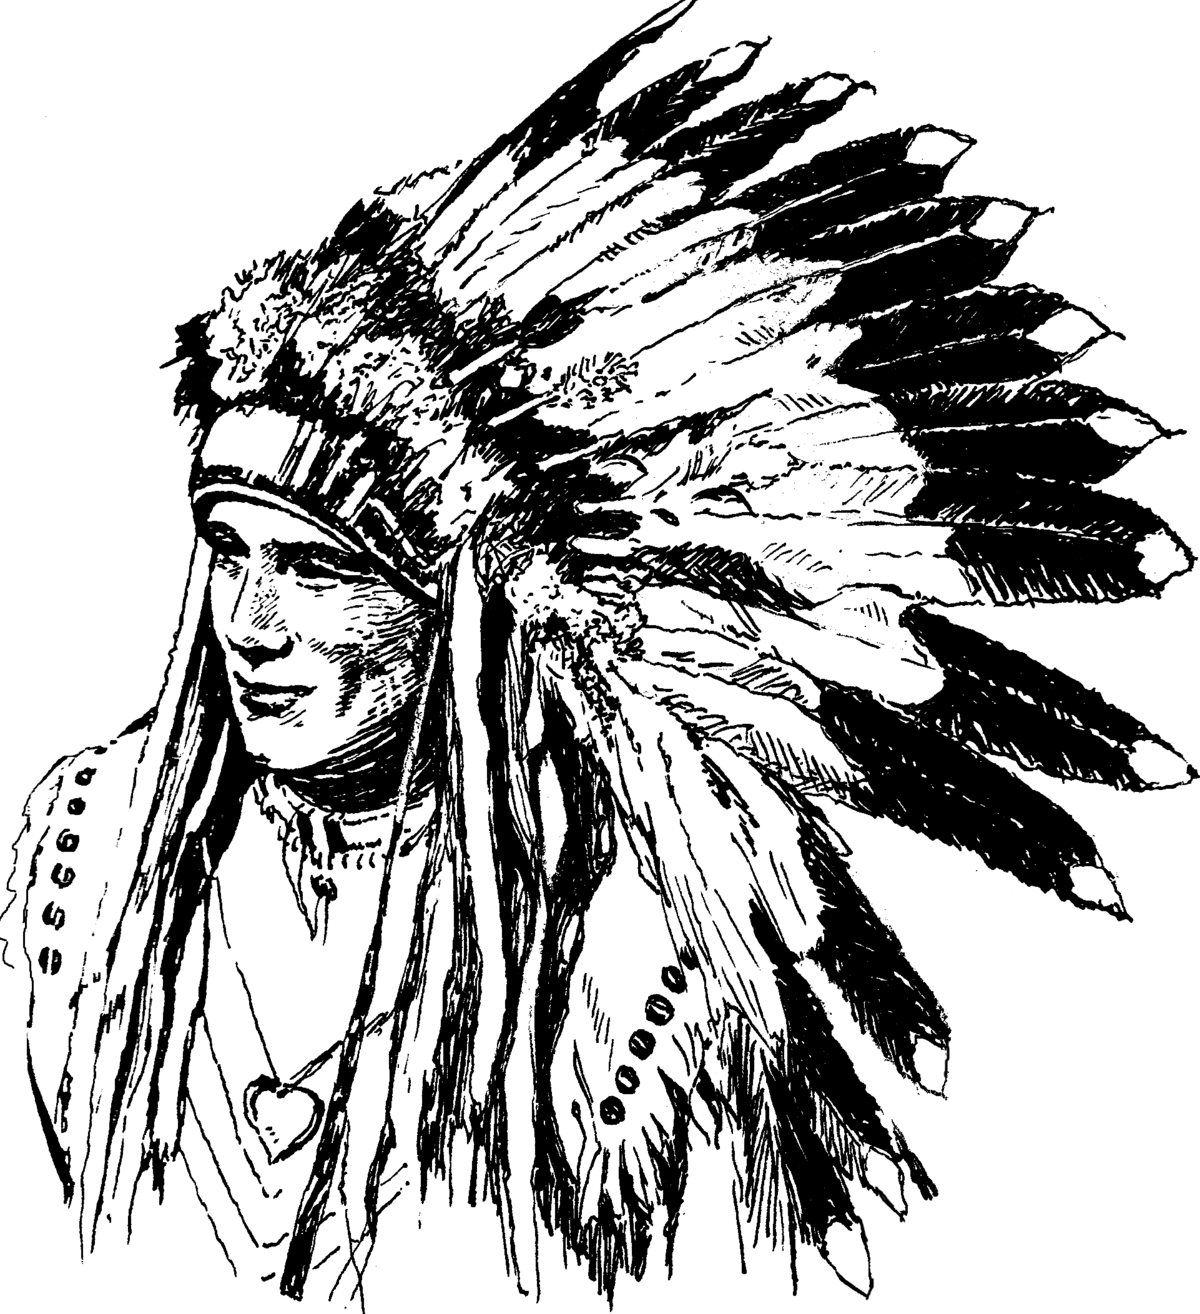 Индеец mp3. Вар Боннет головной убор воина Северной Америки индейца. Трафарет индейца. Индеец рисунок. Перья индейца.